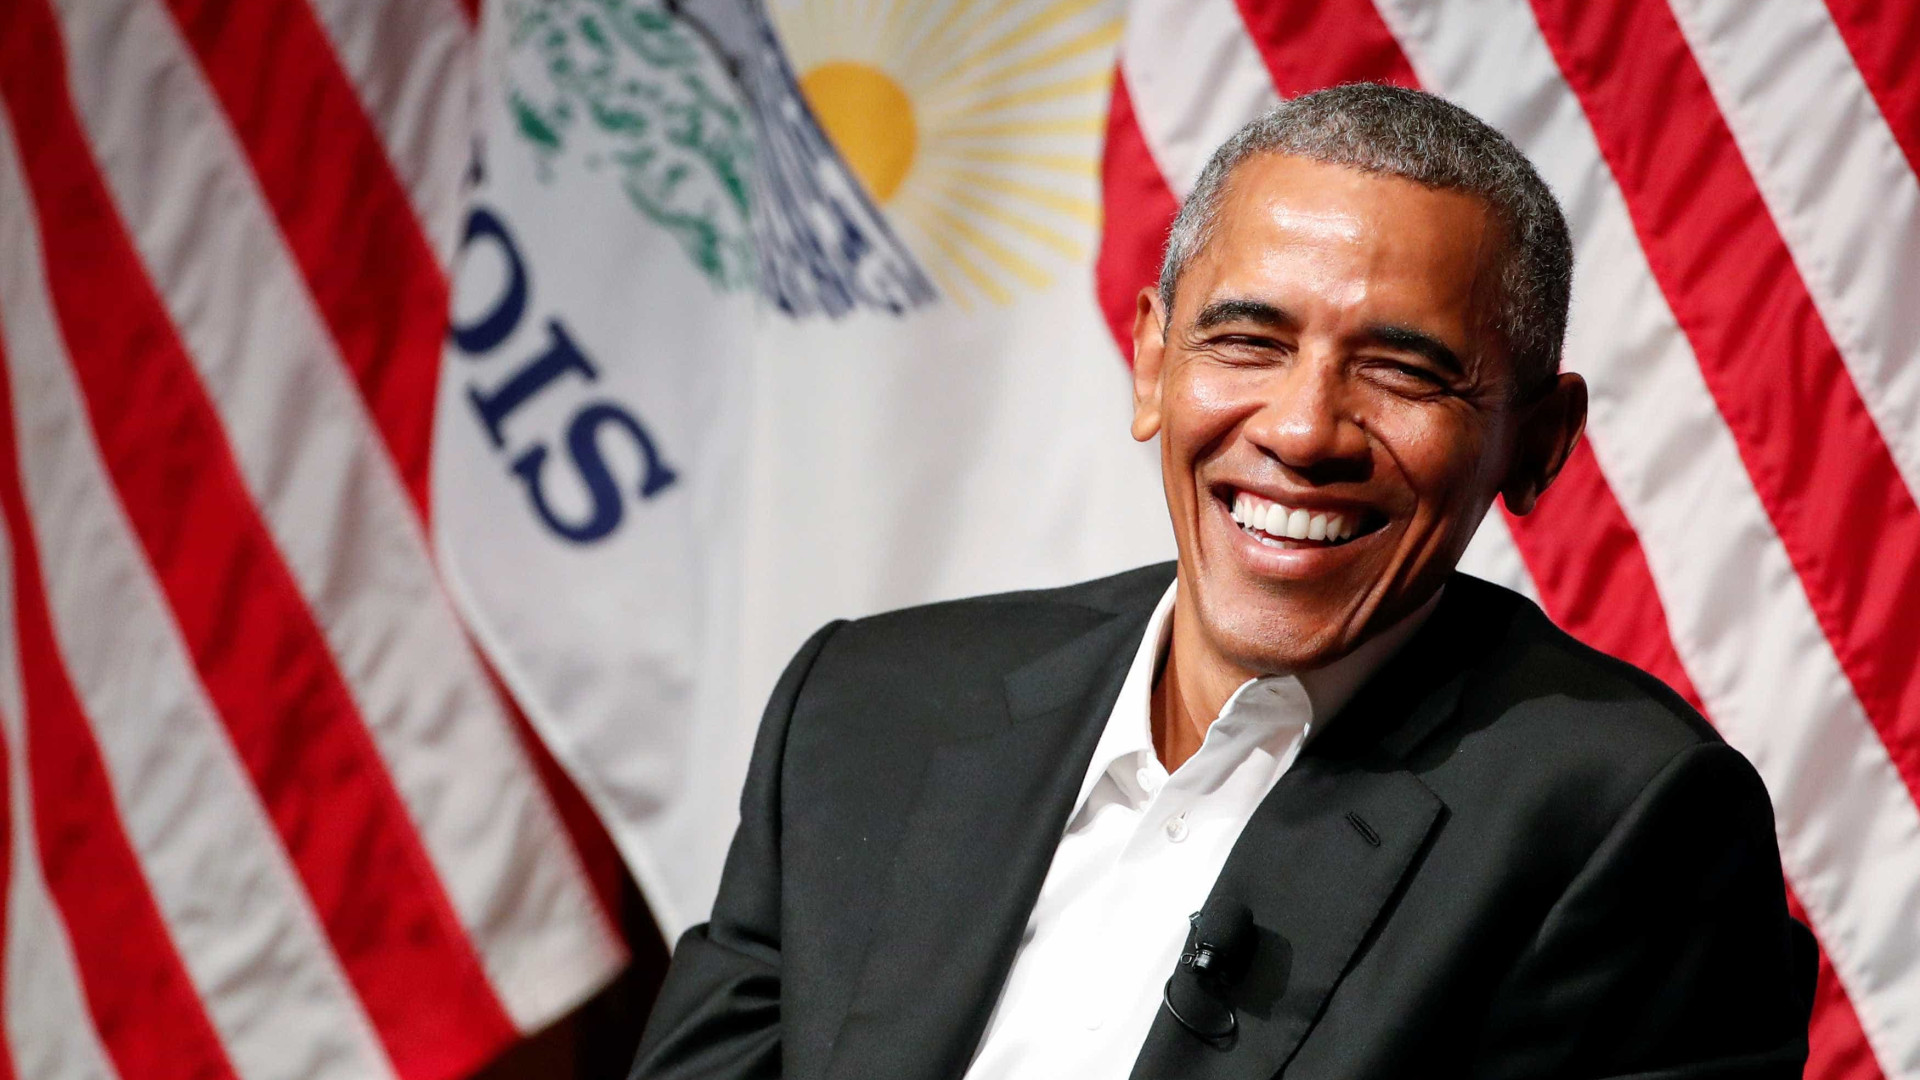 Ingresso para palestra de Obama em Milão custará quase R$ 3 mil